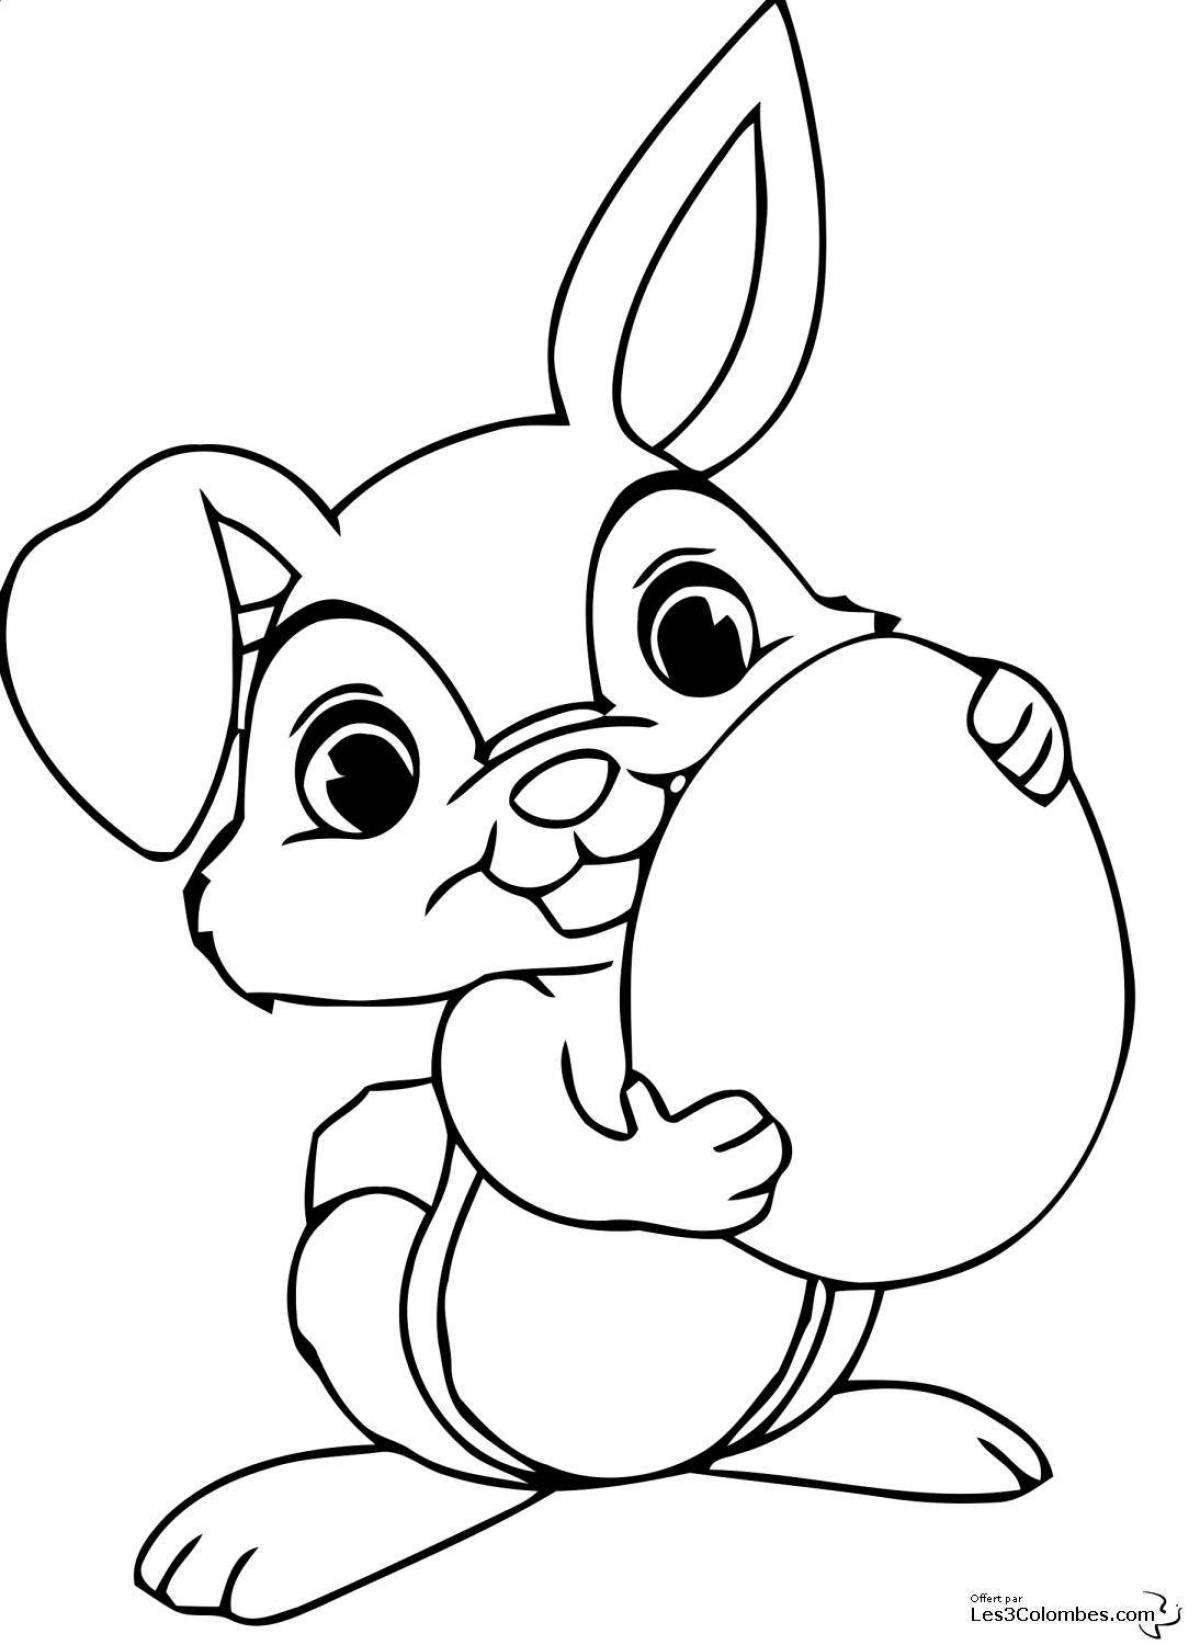 Happy bunny coloring book